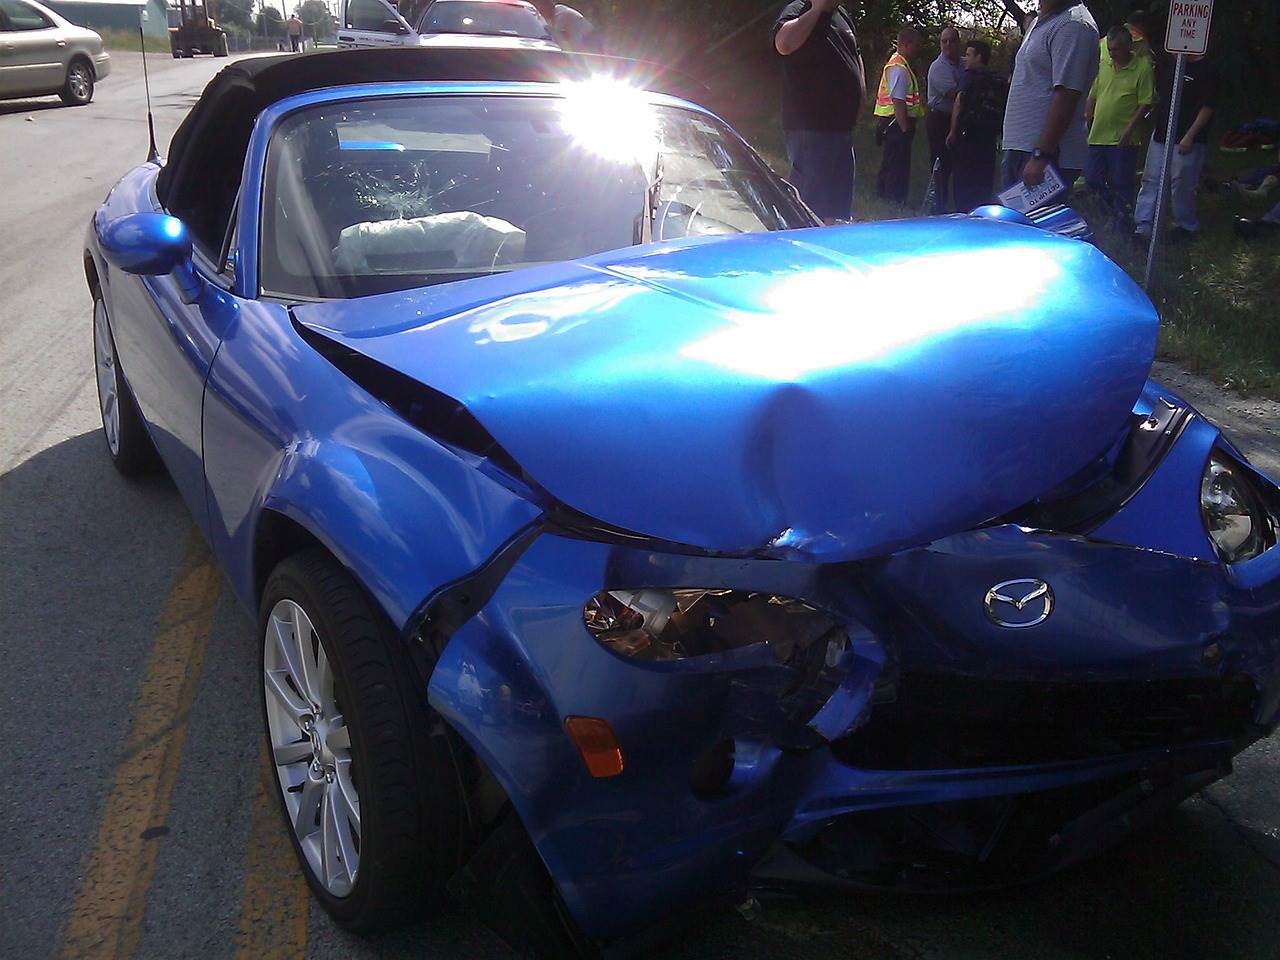  Mazda MX-5 sudar nesreća.jpg 